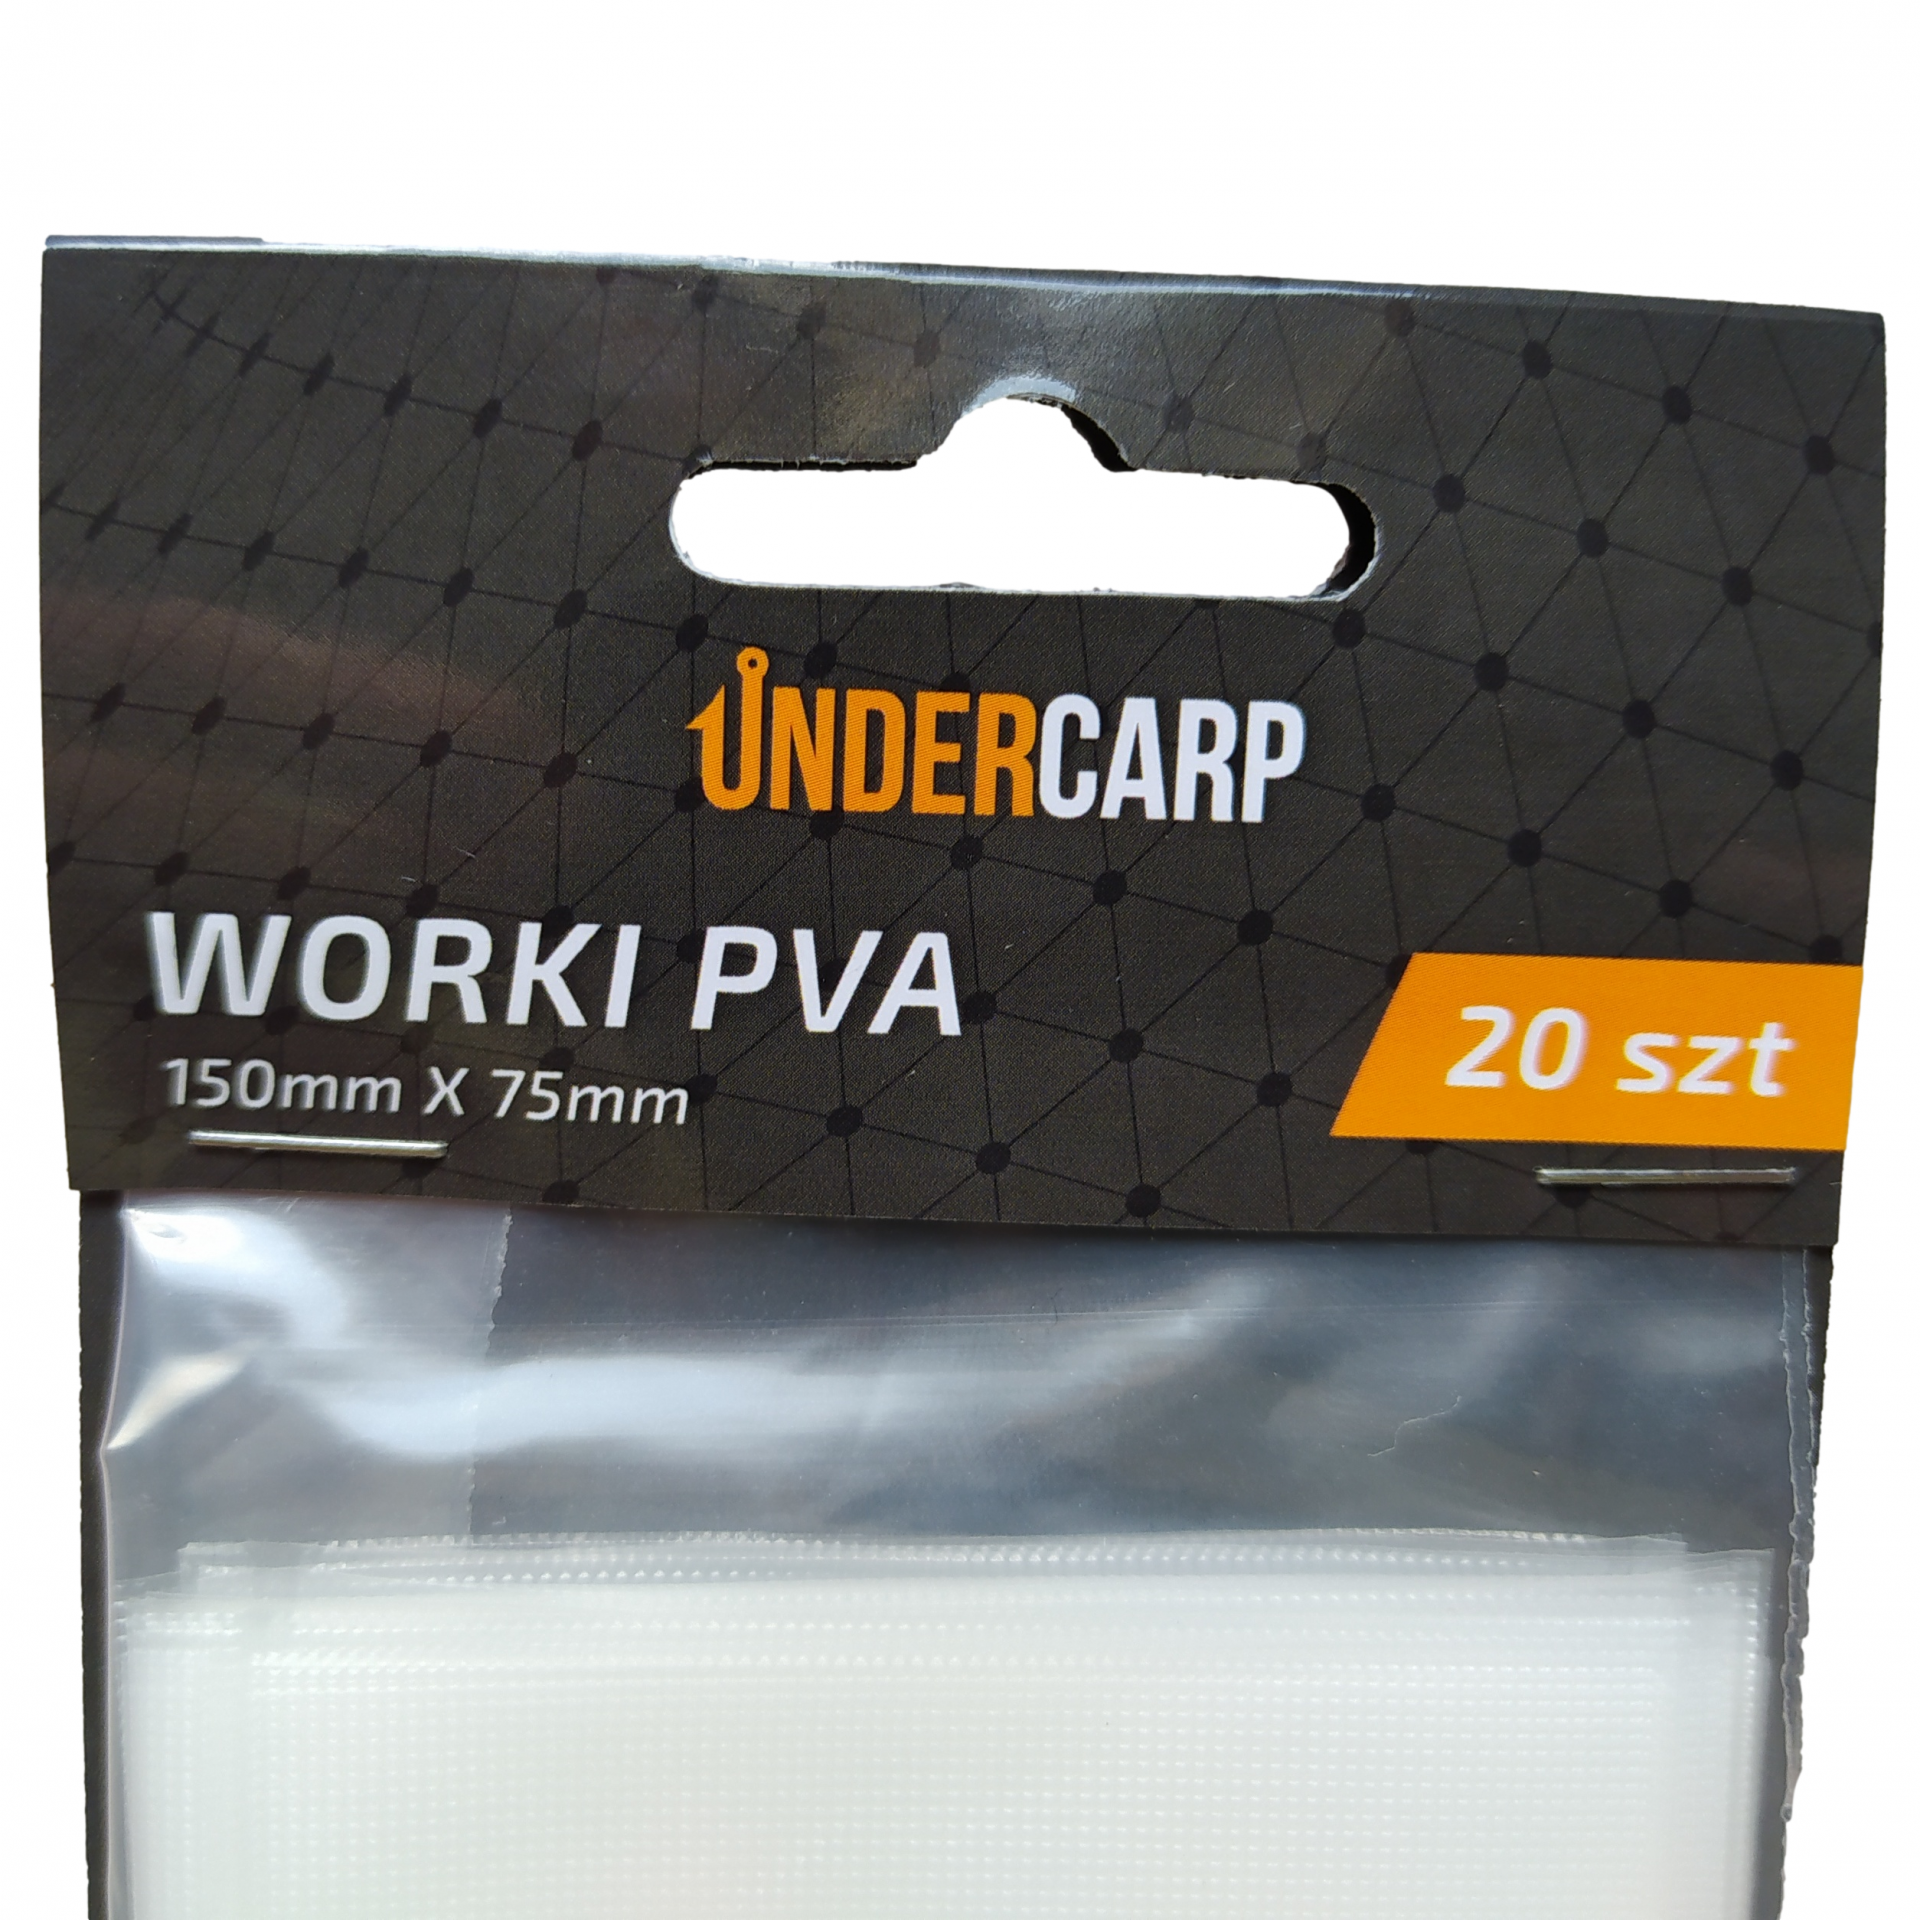 UnderCarp - PVA Bags 150mm x 75mm 20 pcs.